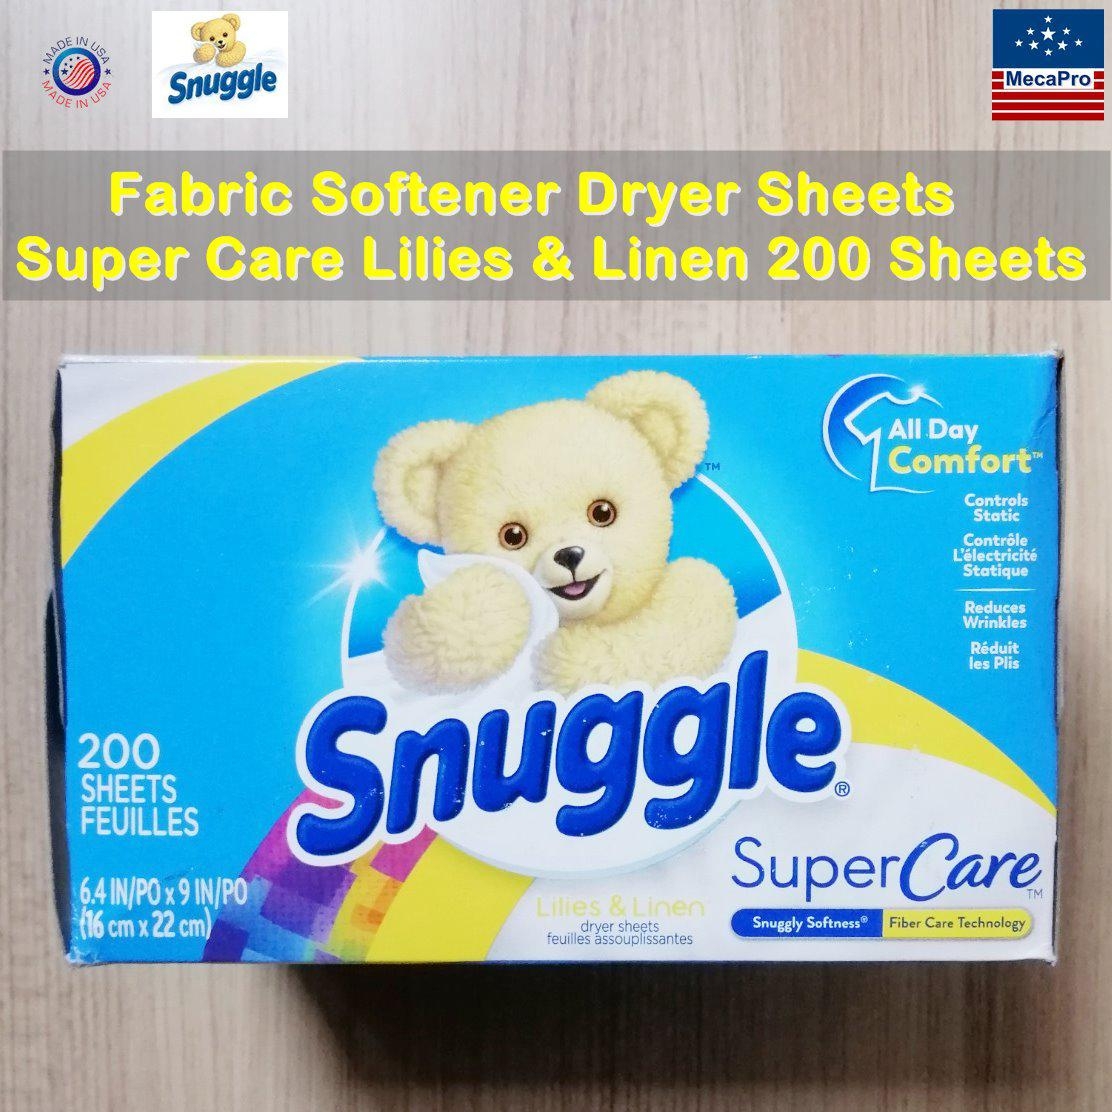 Snuggle® Fabric Softener Dryer Sheets Super Care Lilies & Linen 200 Sheets แผ่นหอมอบผ้า กลิ่นลิลี&ลินิน